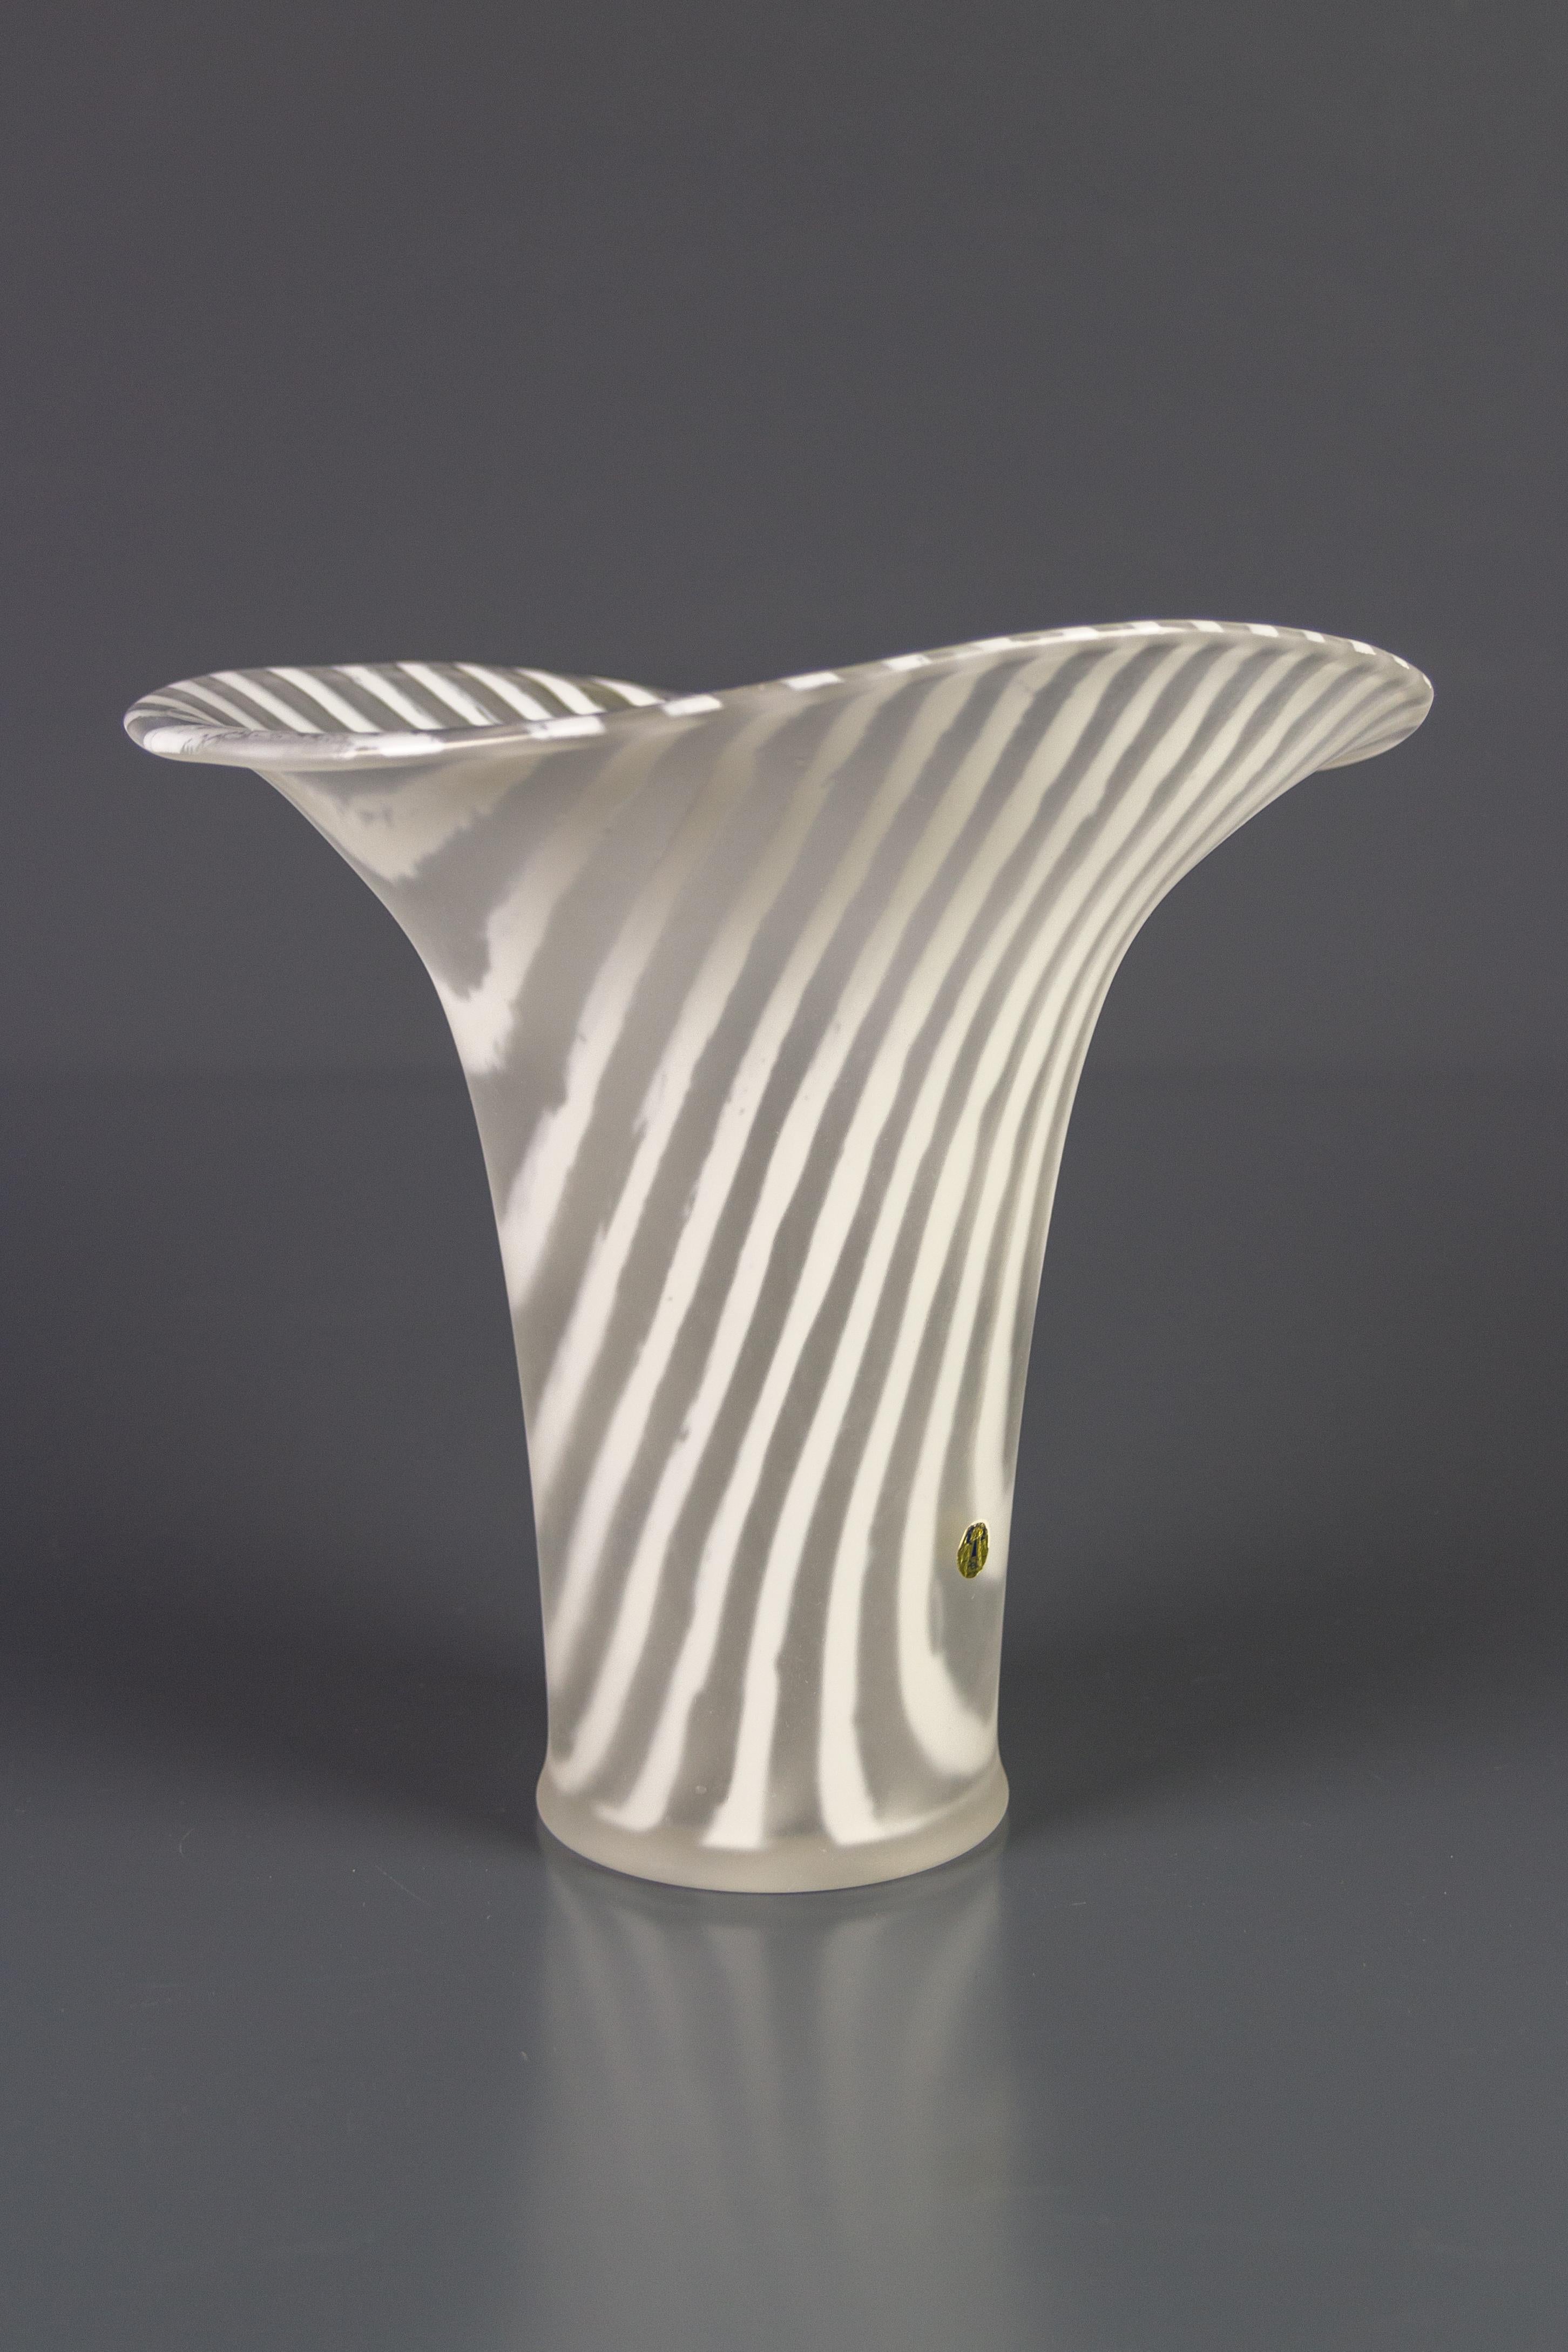 Magnifique vase en verre Zebra Kenya design de Peill & Putzler, Allemagne, années 1970. La finition extérieure finement givrée est magnifiquement contrastée par le verre brillant de la surface intérieure.
Dimensions : hauteur : 26 cm / 10.23 in ;